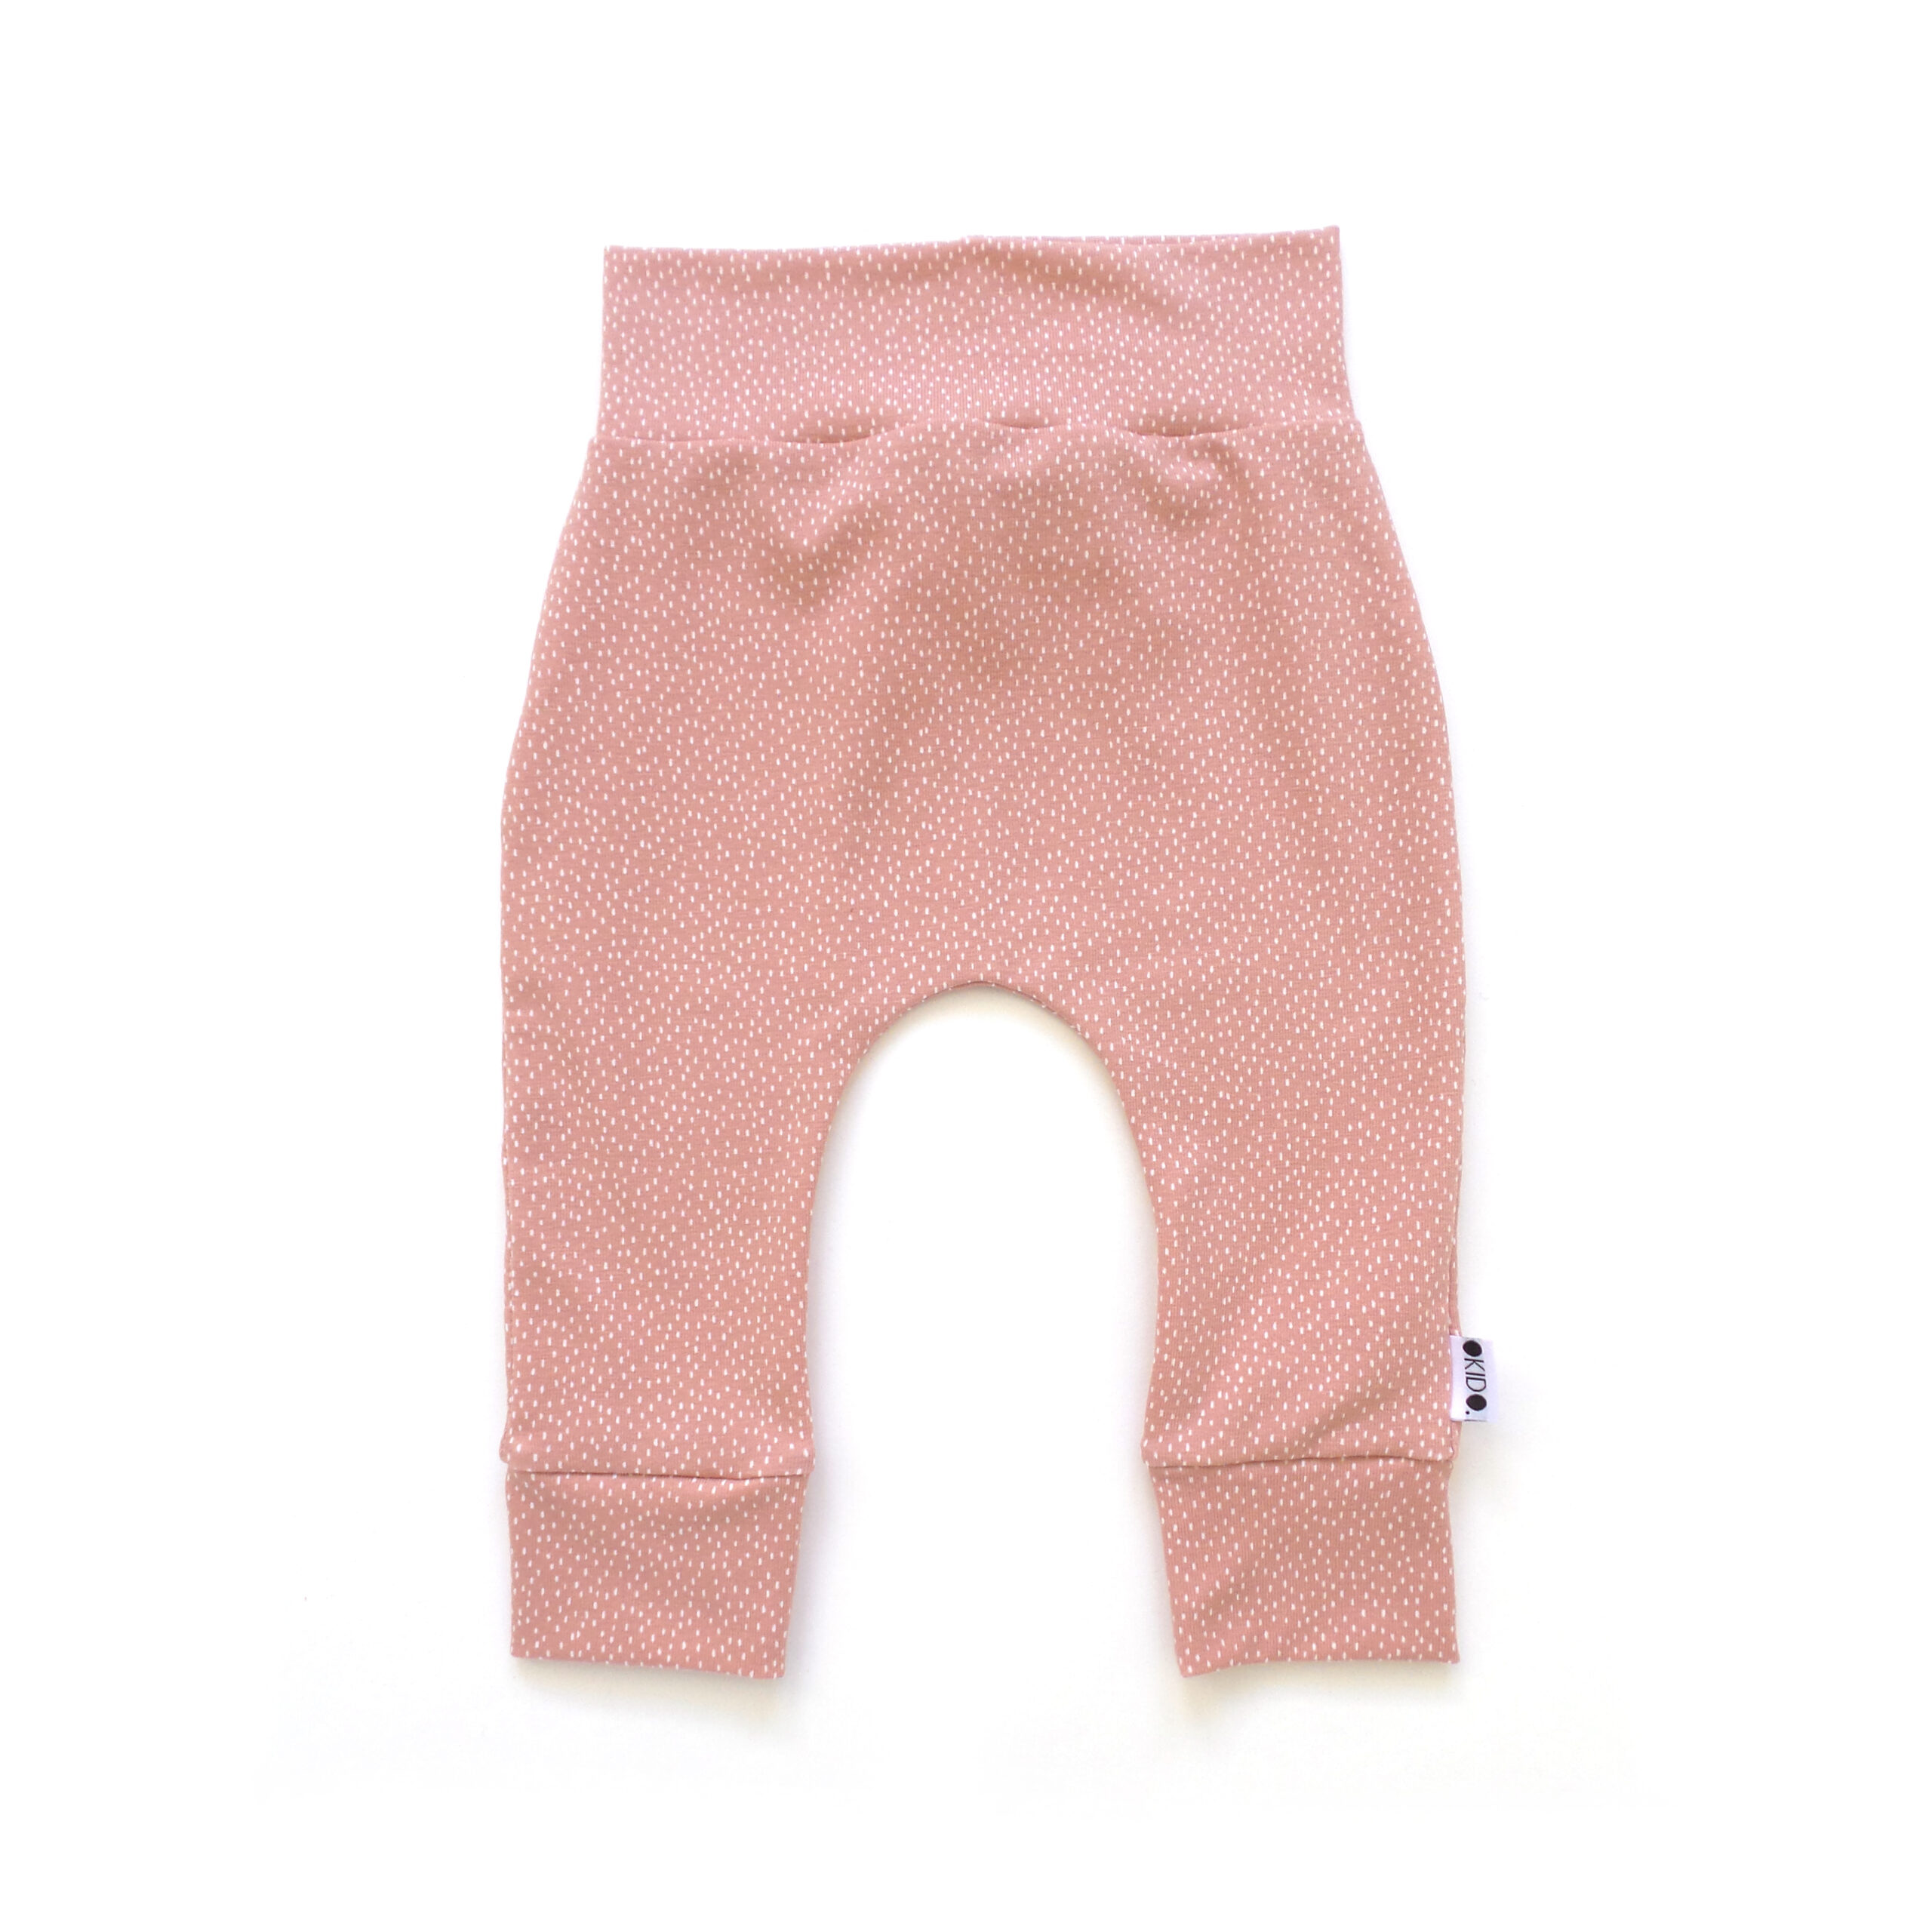 Mis Peuter beschermen Lang broekje kleine stippen roze – OKIDO kids clothes